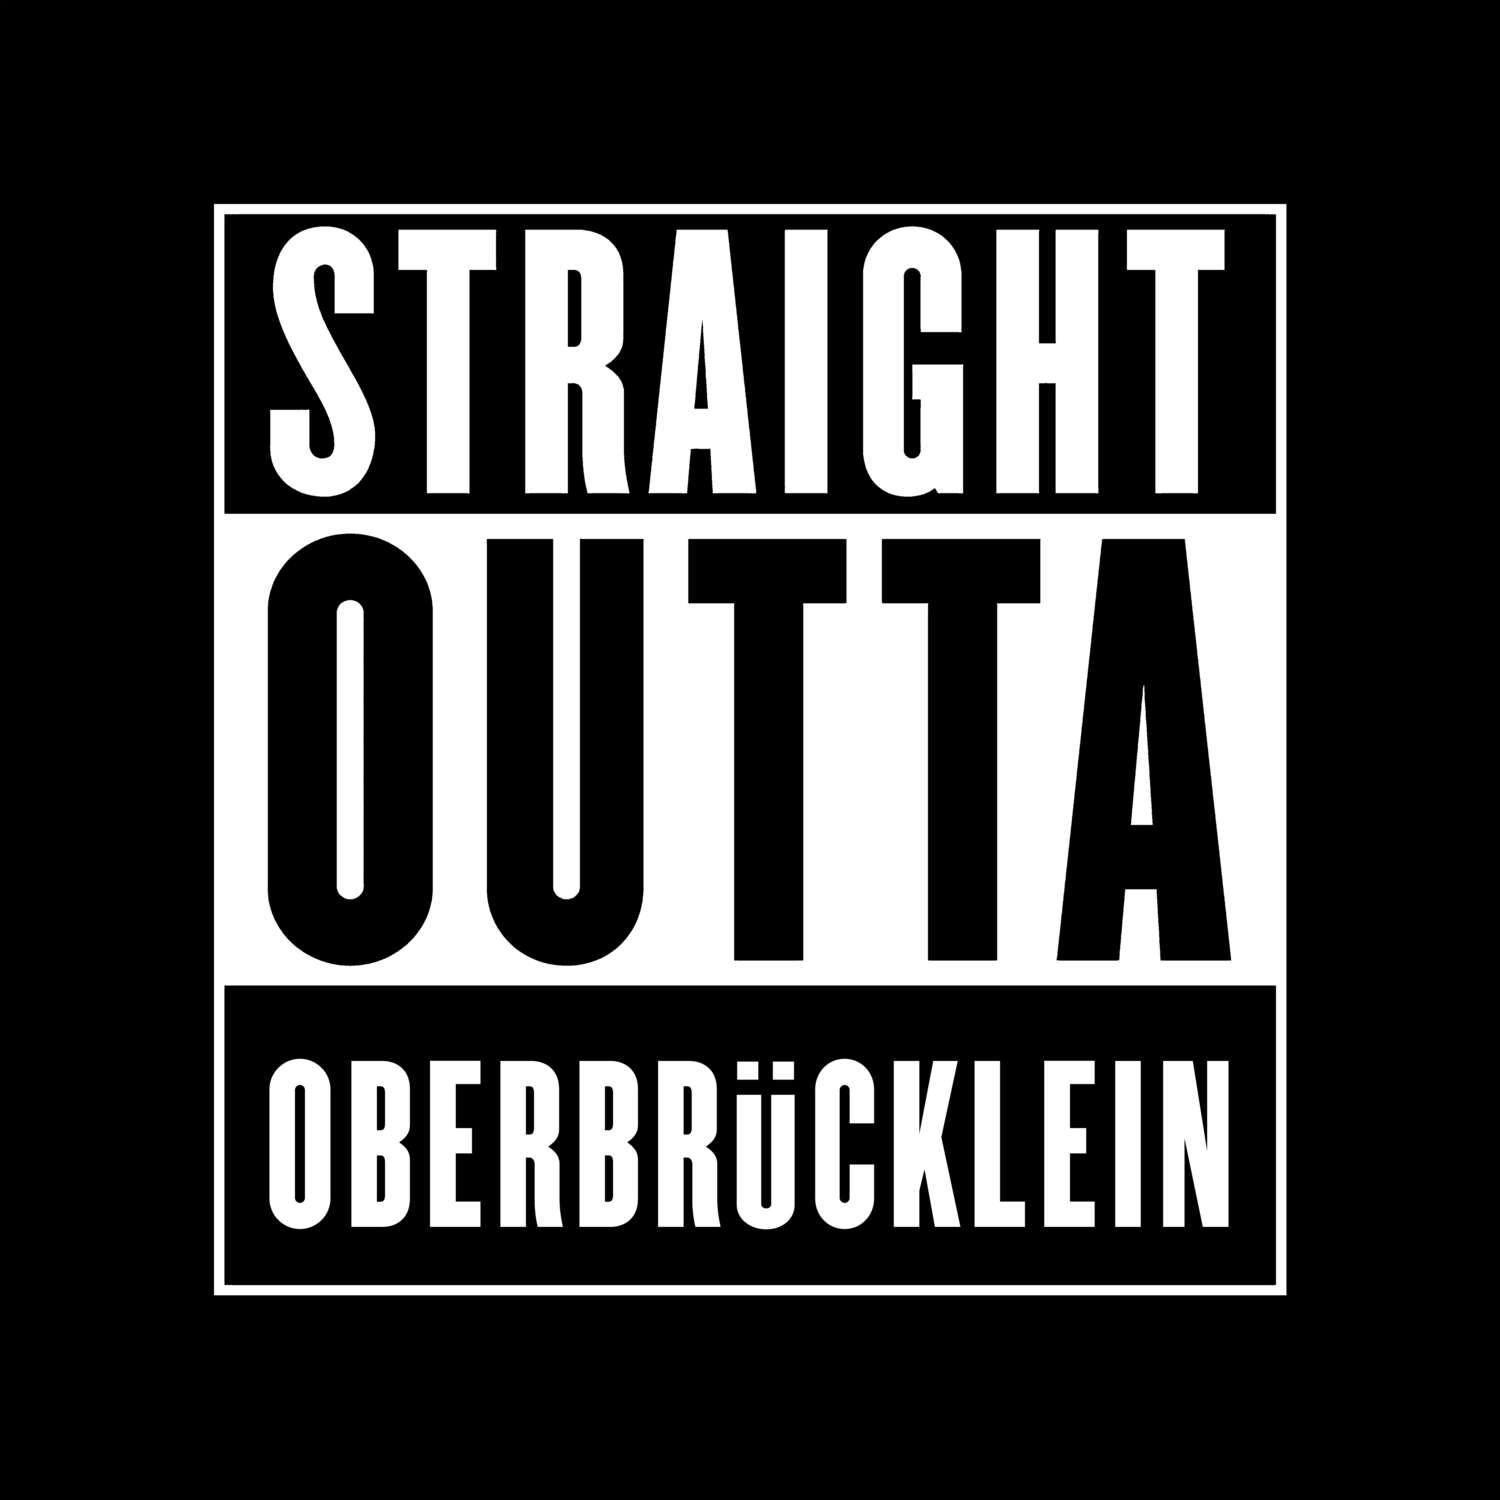 Oberbrücklein T-Shirt »Straight Outta«